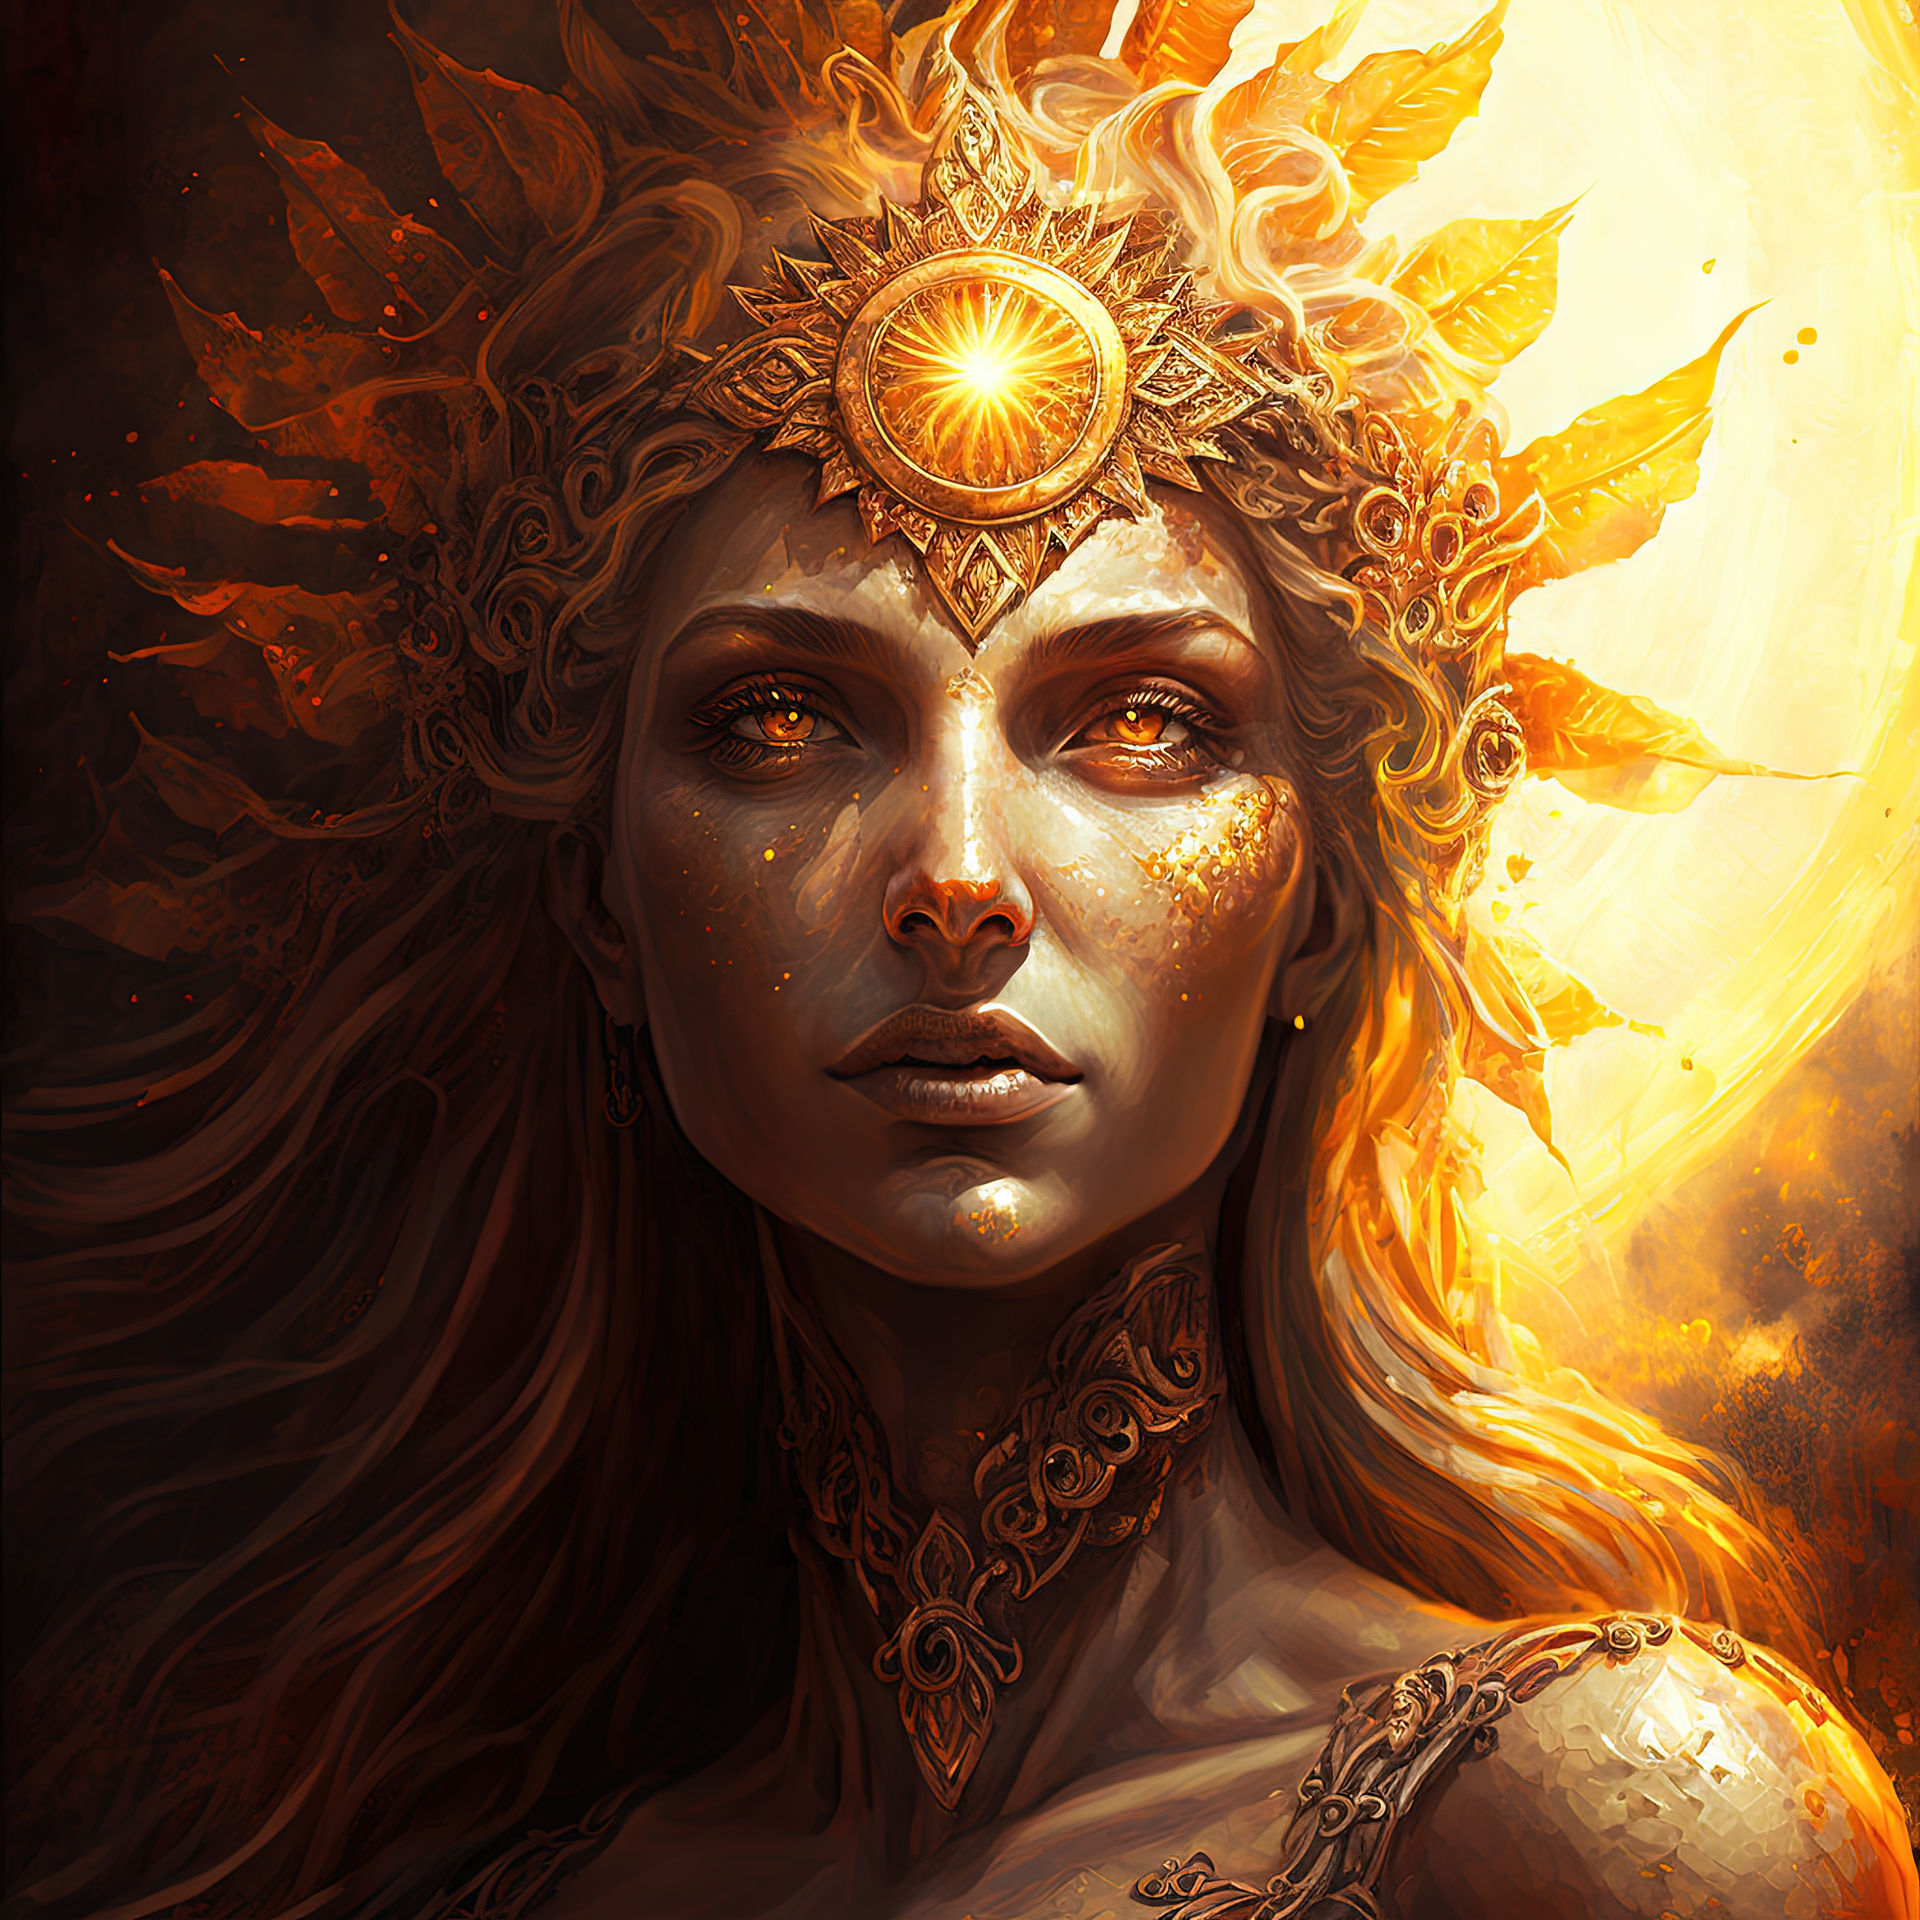 Queen of the Sun (AI art) by 3D1viner on DeviantArt